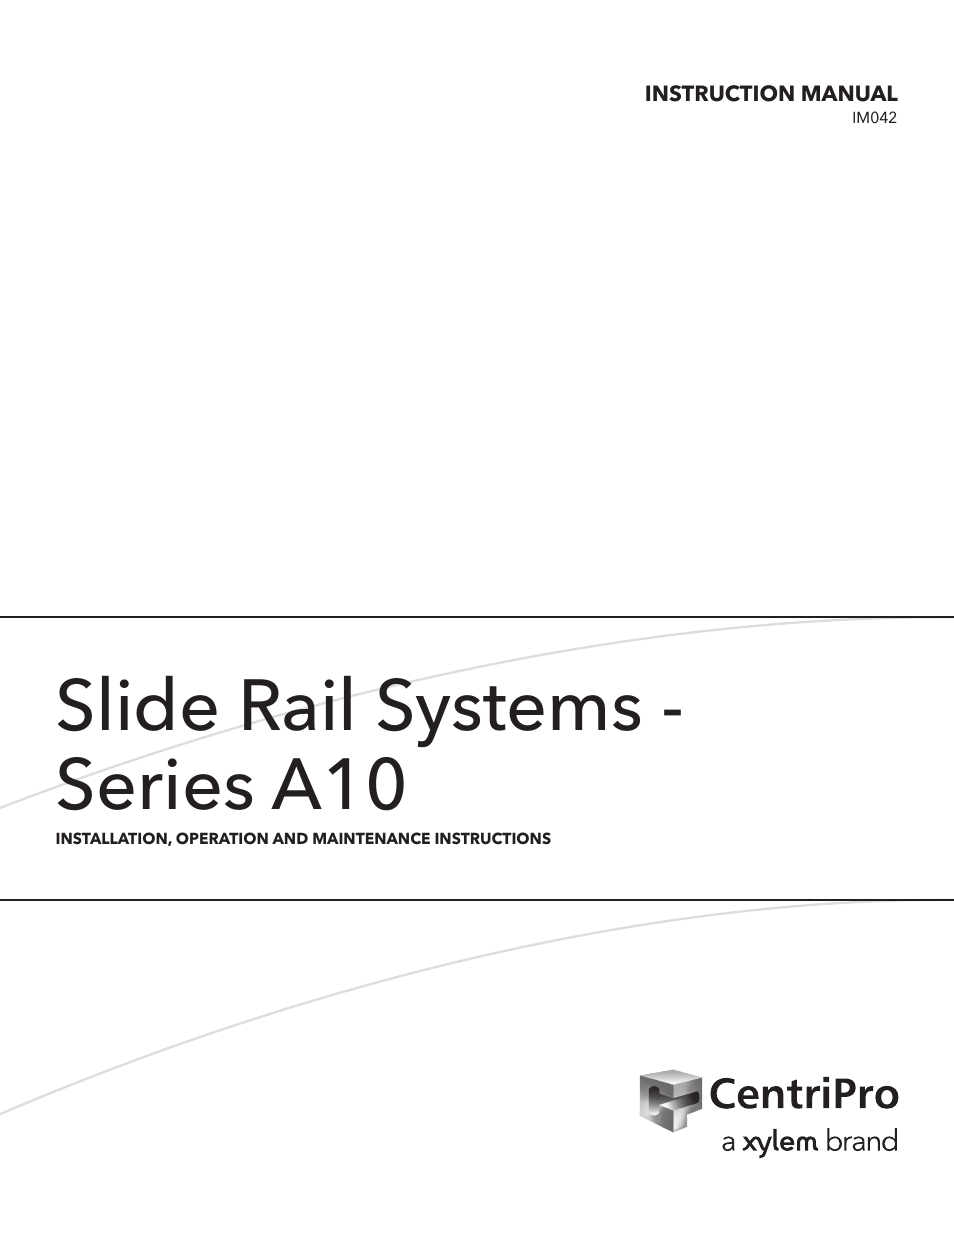 IM042 R03 Slide Rail Systems Series A10 & APD